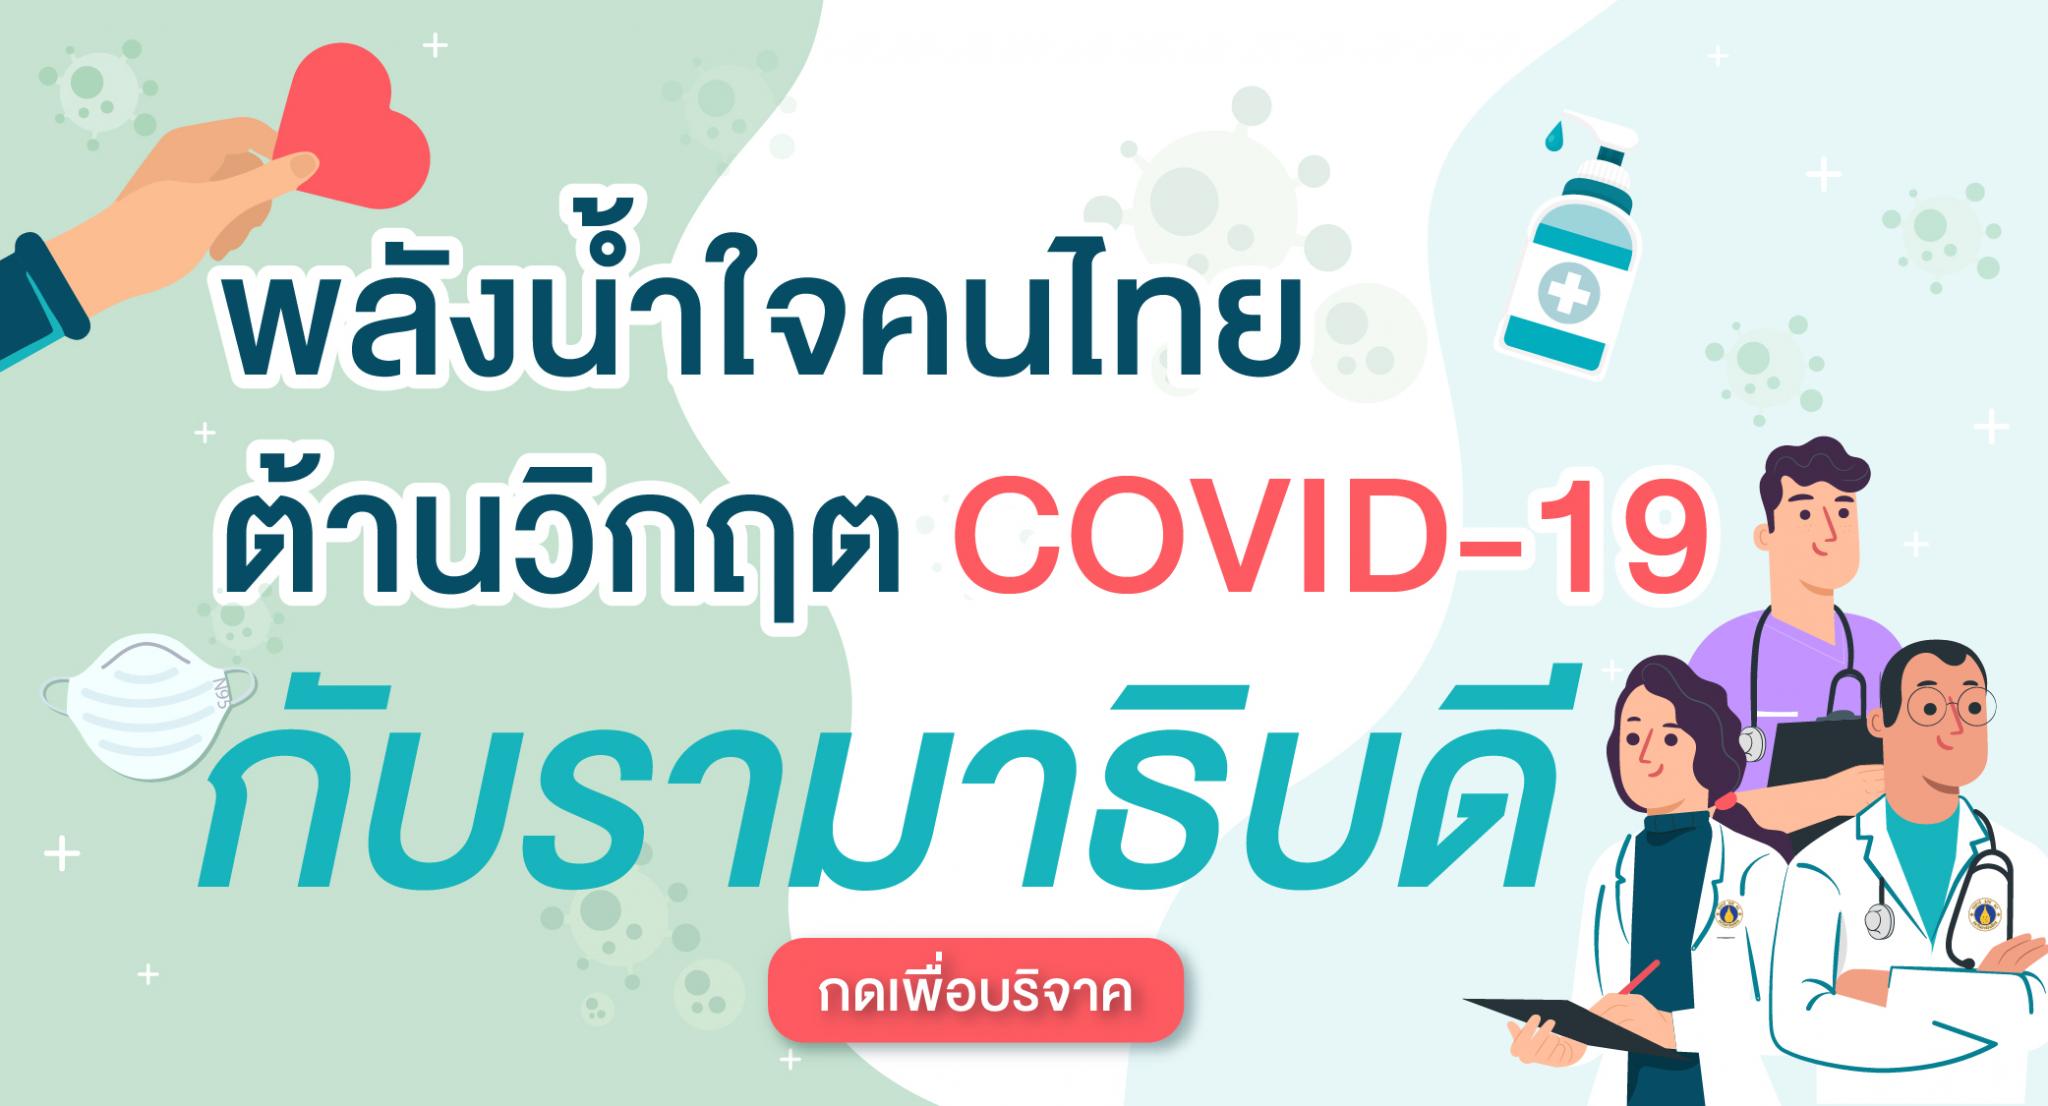 พลังน้ำใจคนไทย ต้านวิกฤต COVID-19 กับรามาธิบดี